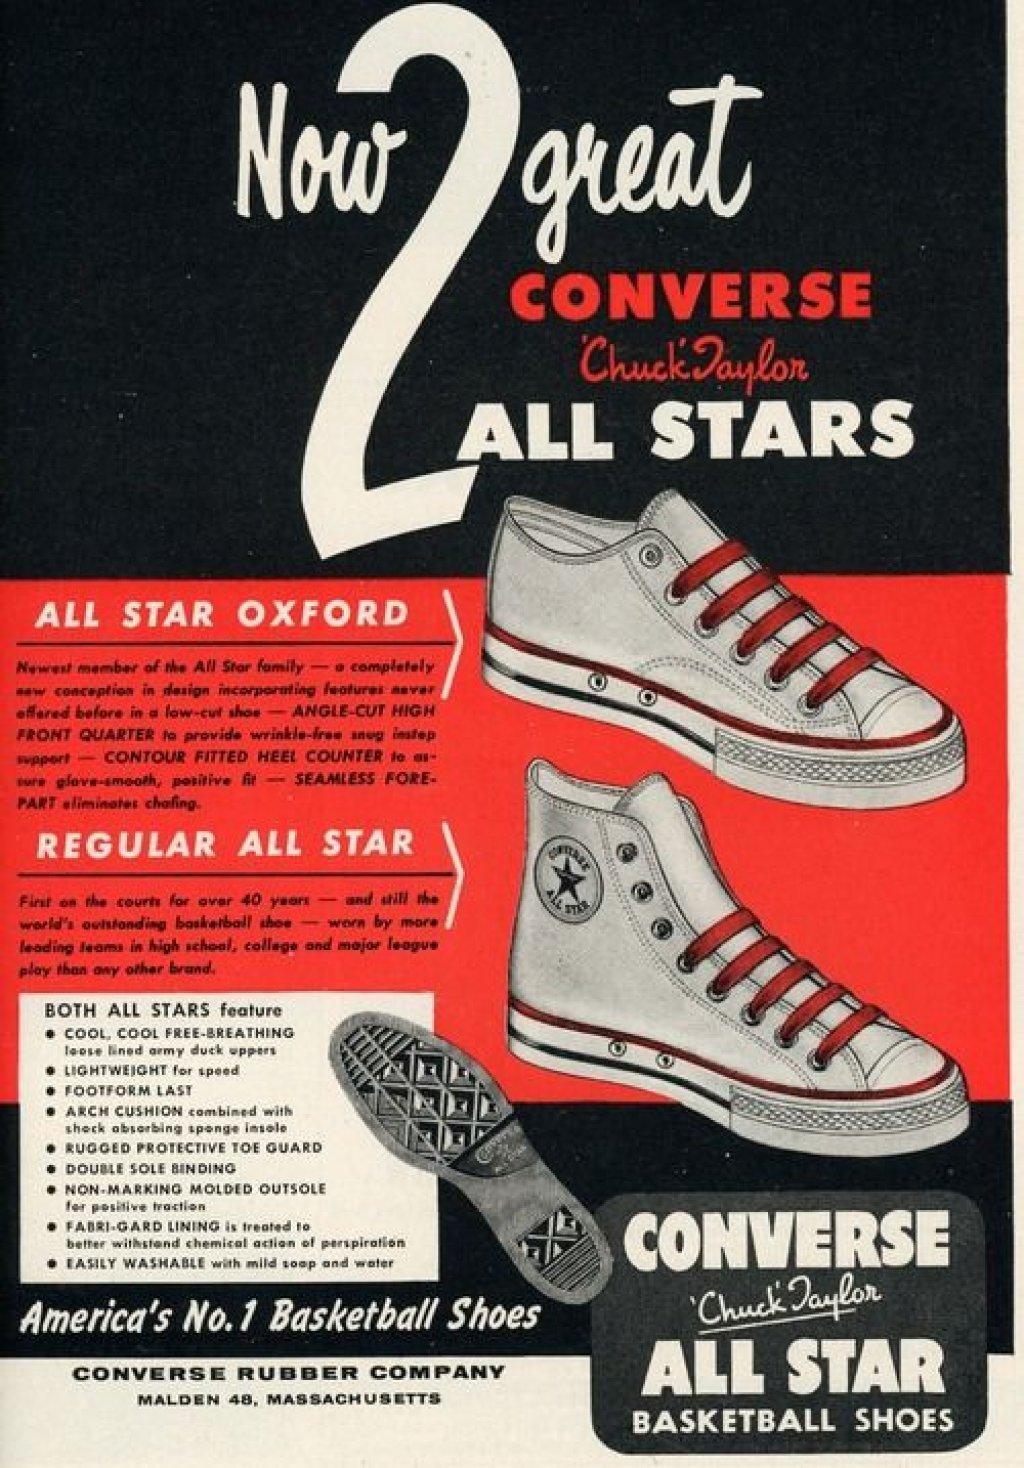 Detailed dock Accidentally La storia delle Converse All-Star (FOTO)